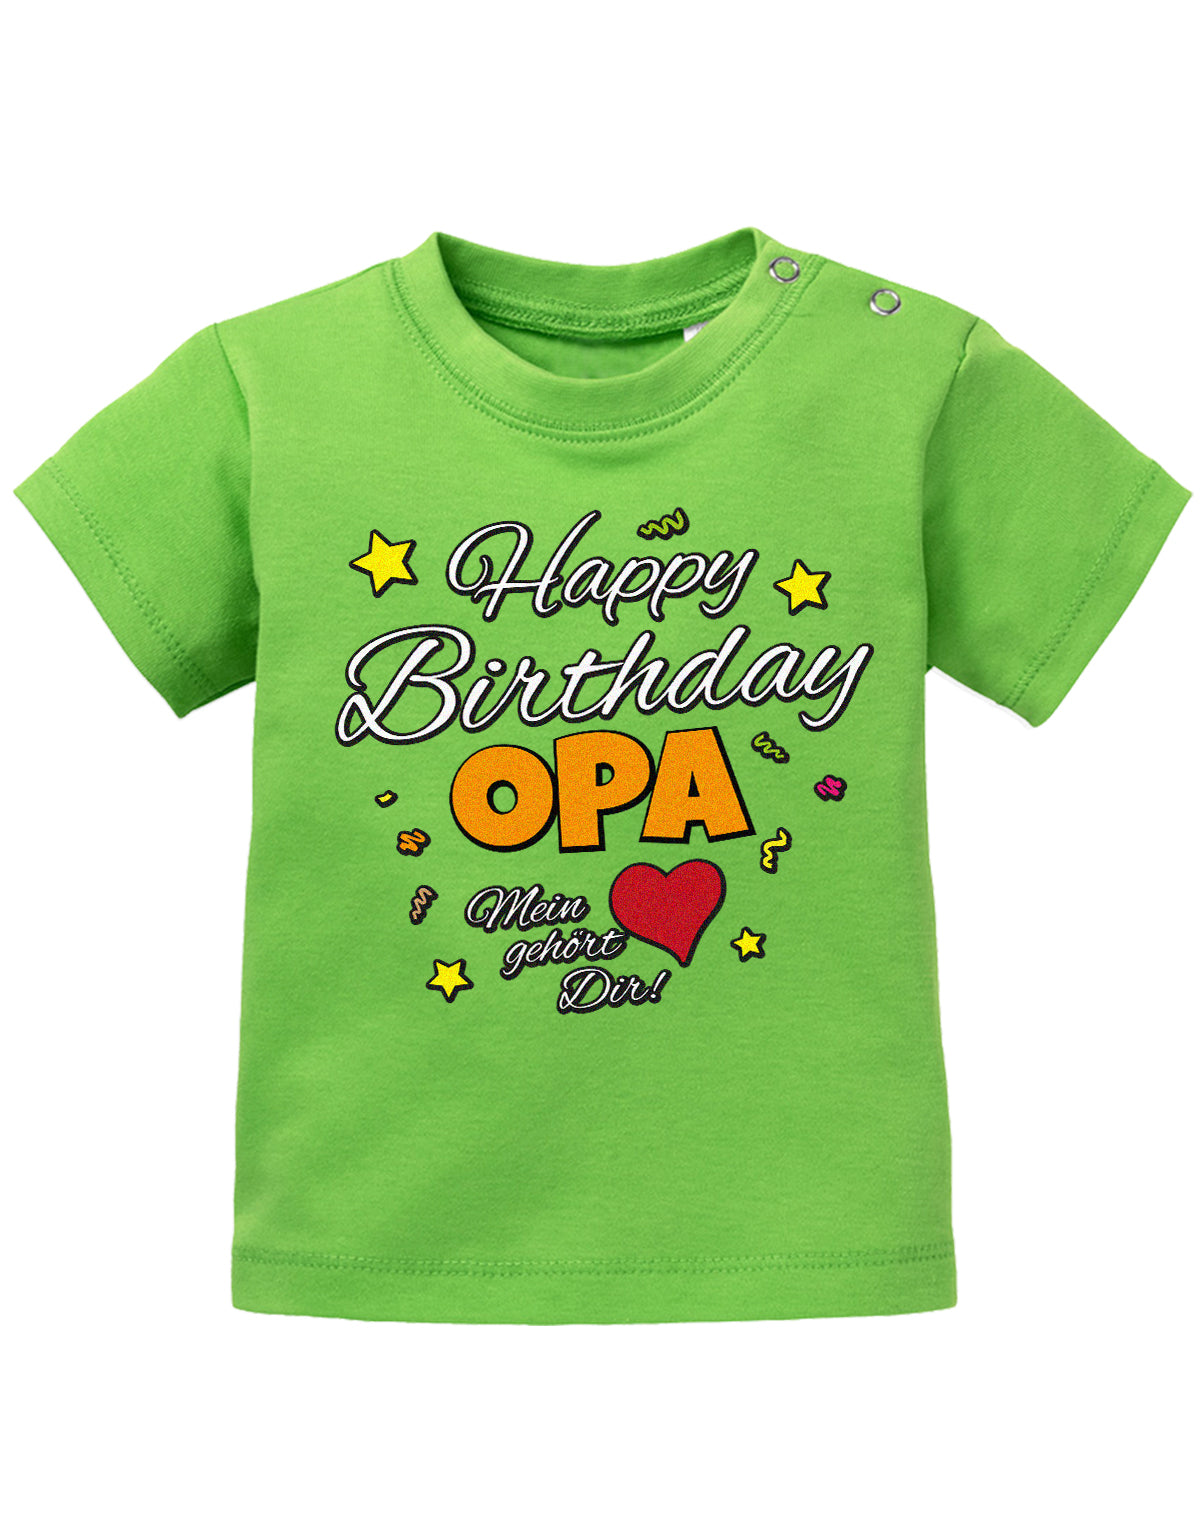 Opa Spruch Baby Shirt. Happy Birthday, Opa, mein Herz gehört Dir. Grün